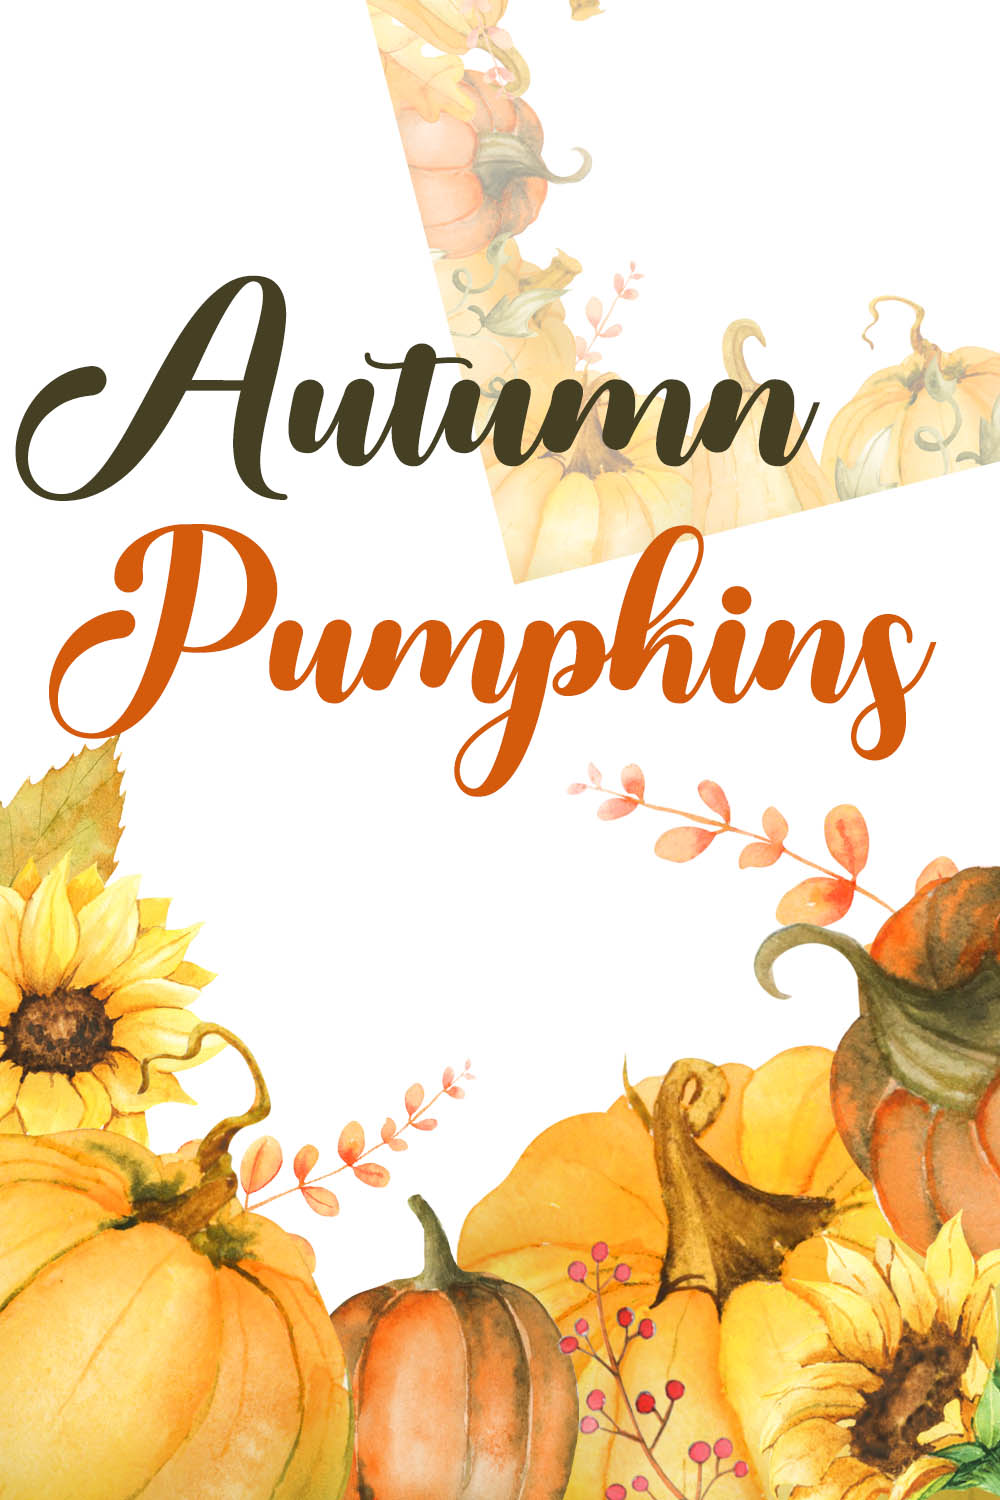 Pumpkins Autumn Watercolor Clipart pinterest image.